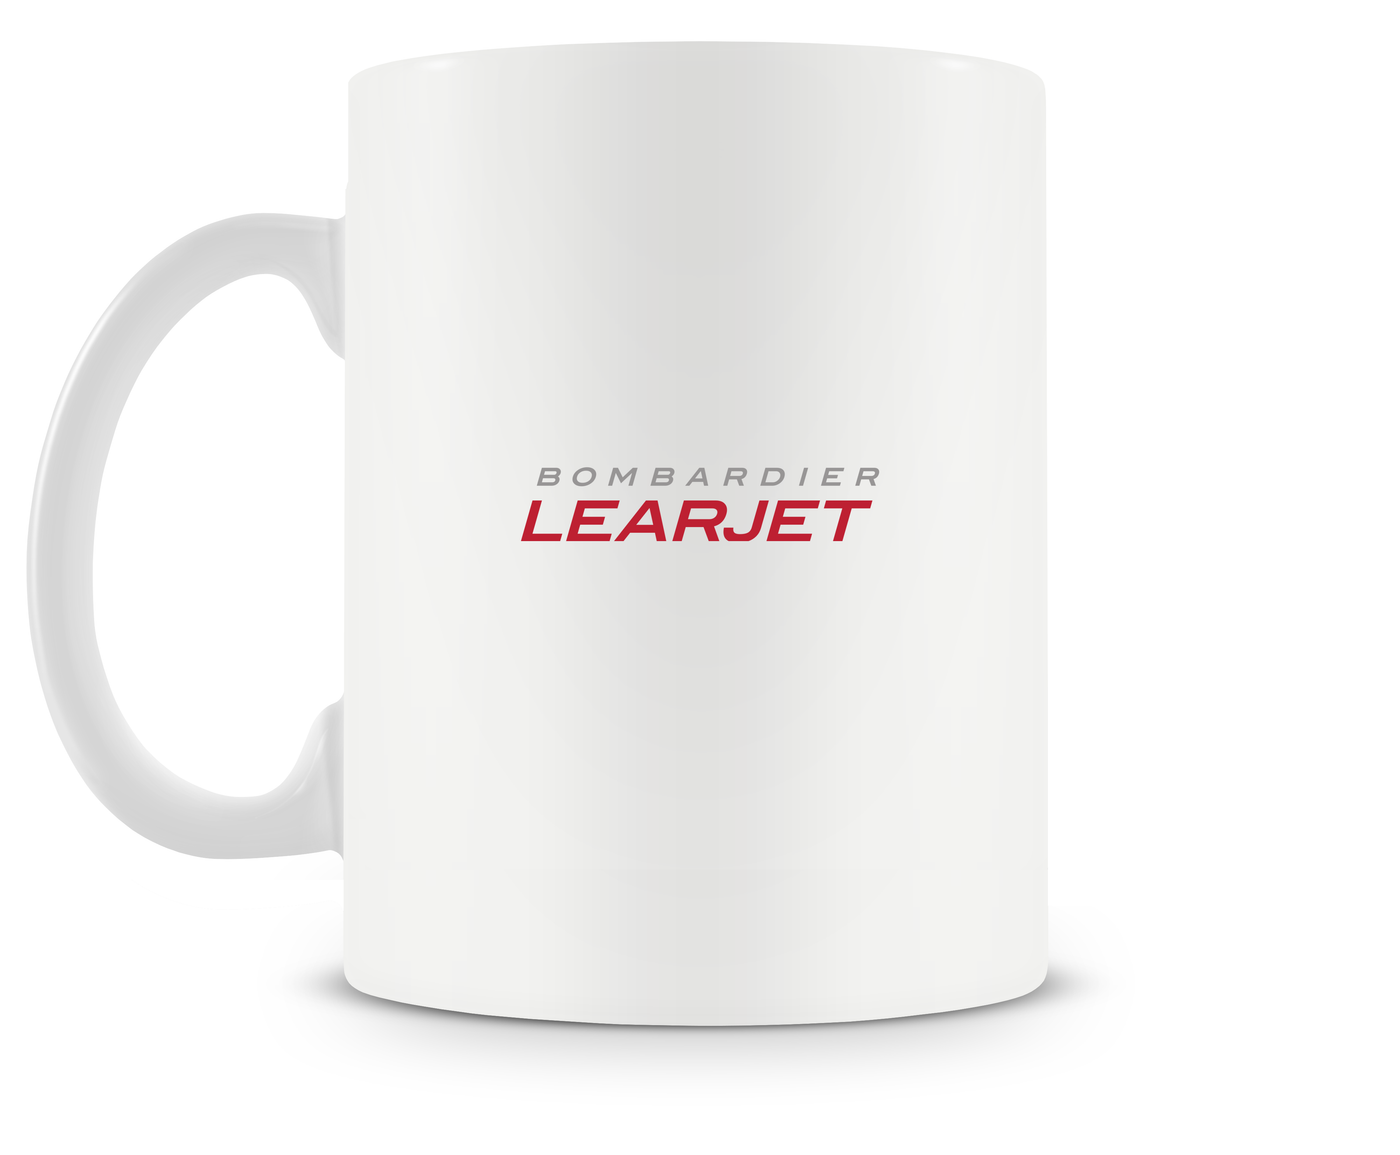 Bombardier Learjet 40 Mug - Aircraft Mugs